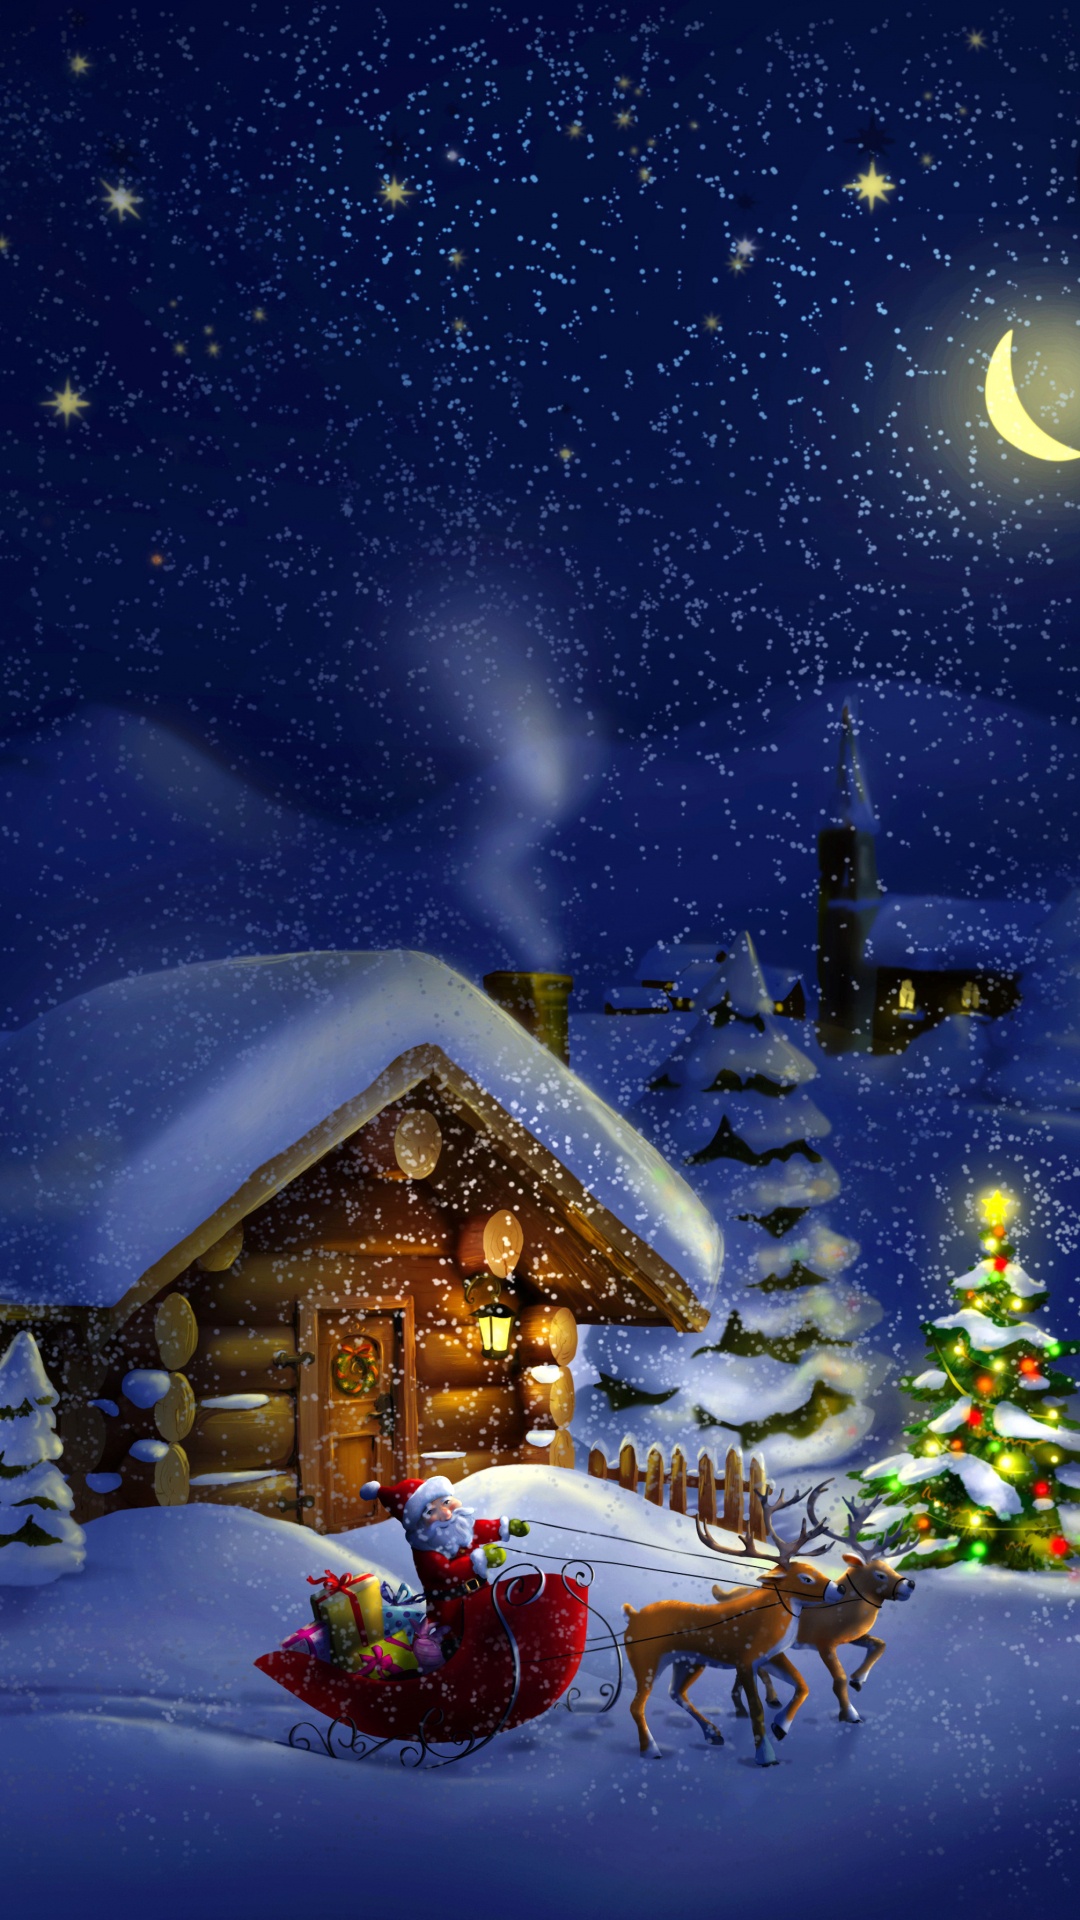 Le Jour De Noël, Santa Claus, Hiver, Neige, Nuit. Wallpaper in 1080x1920 Resolution